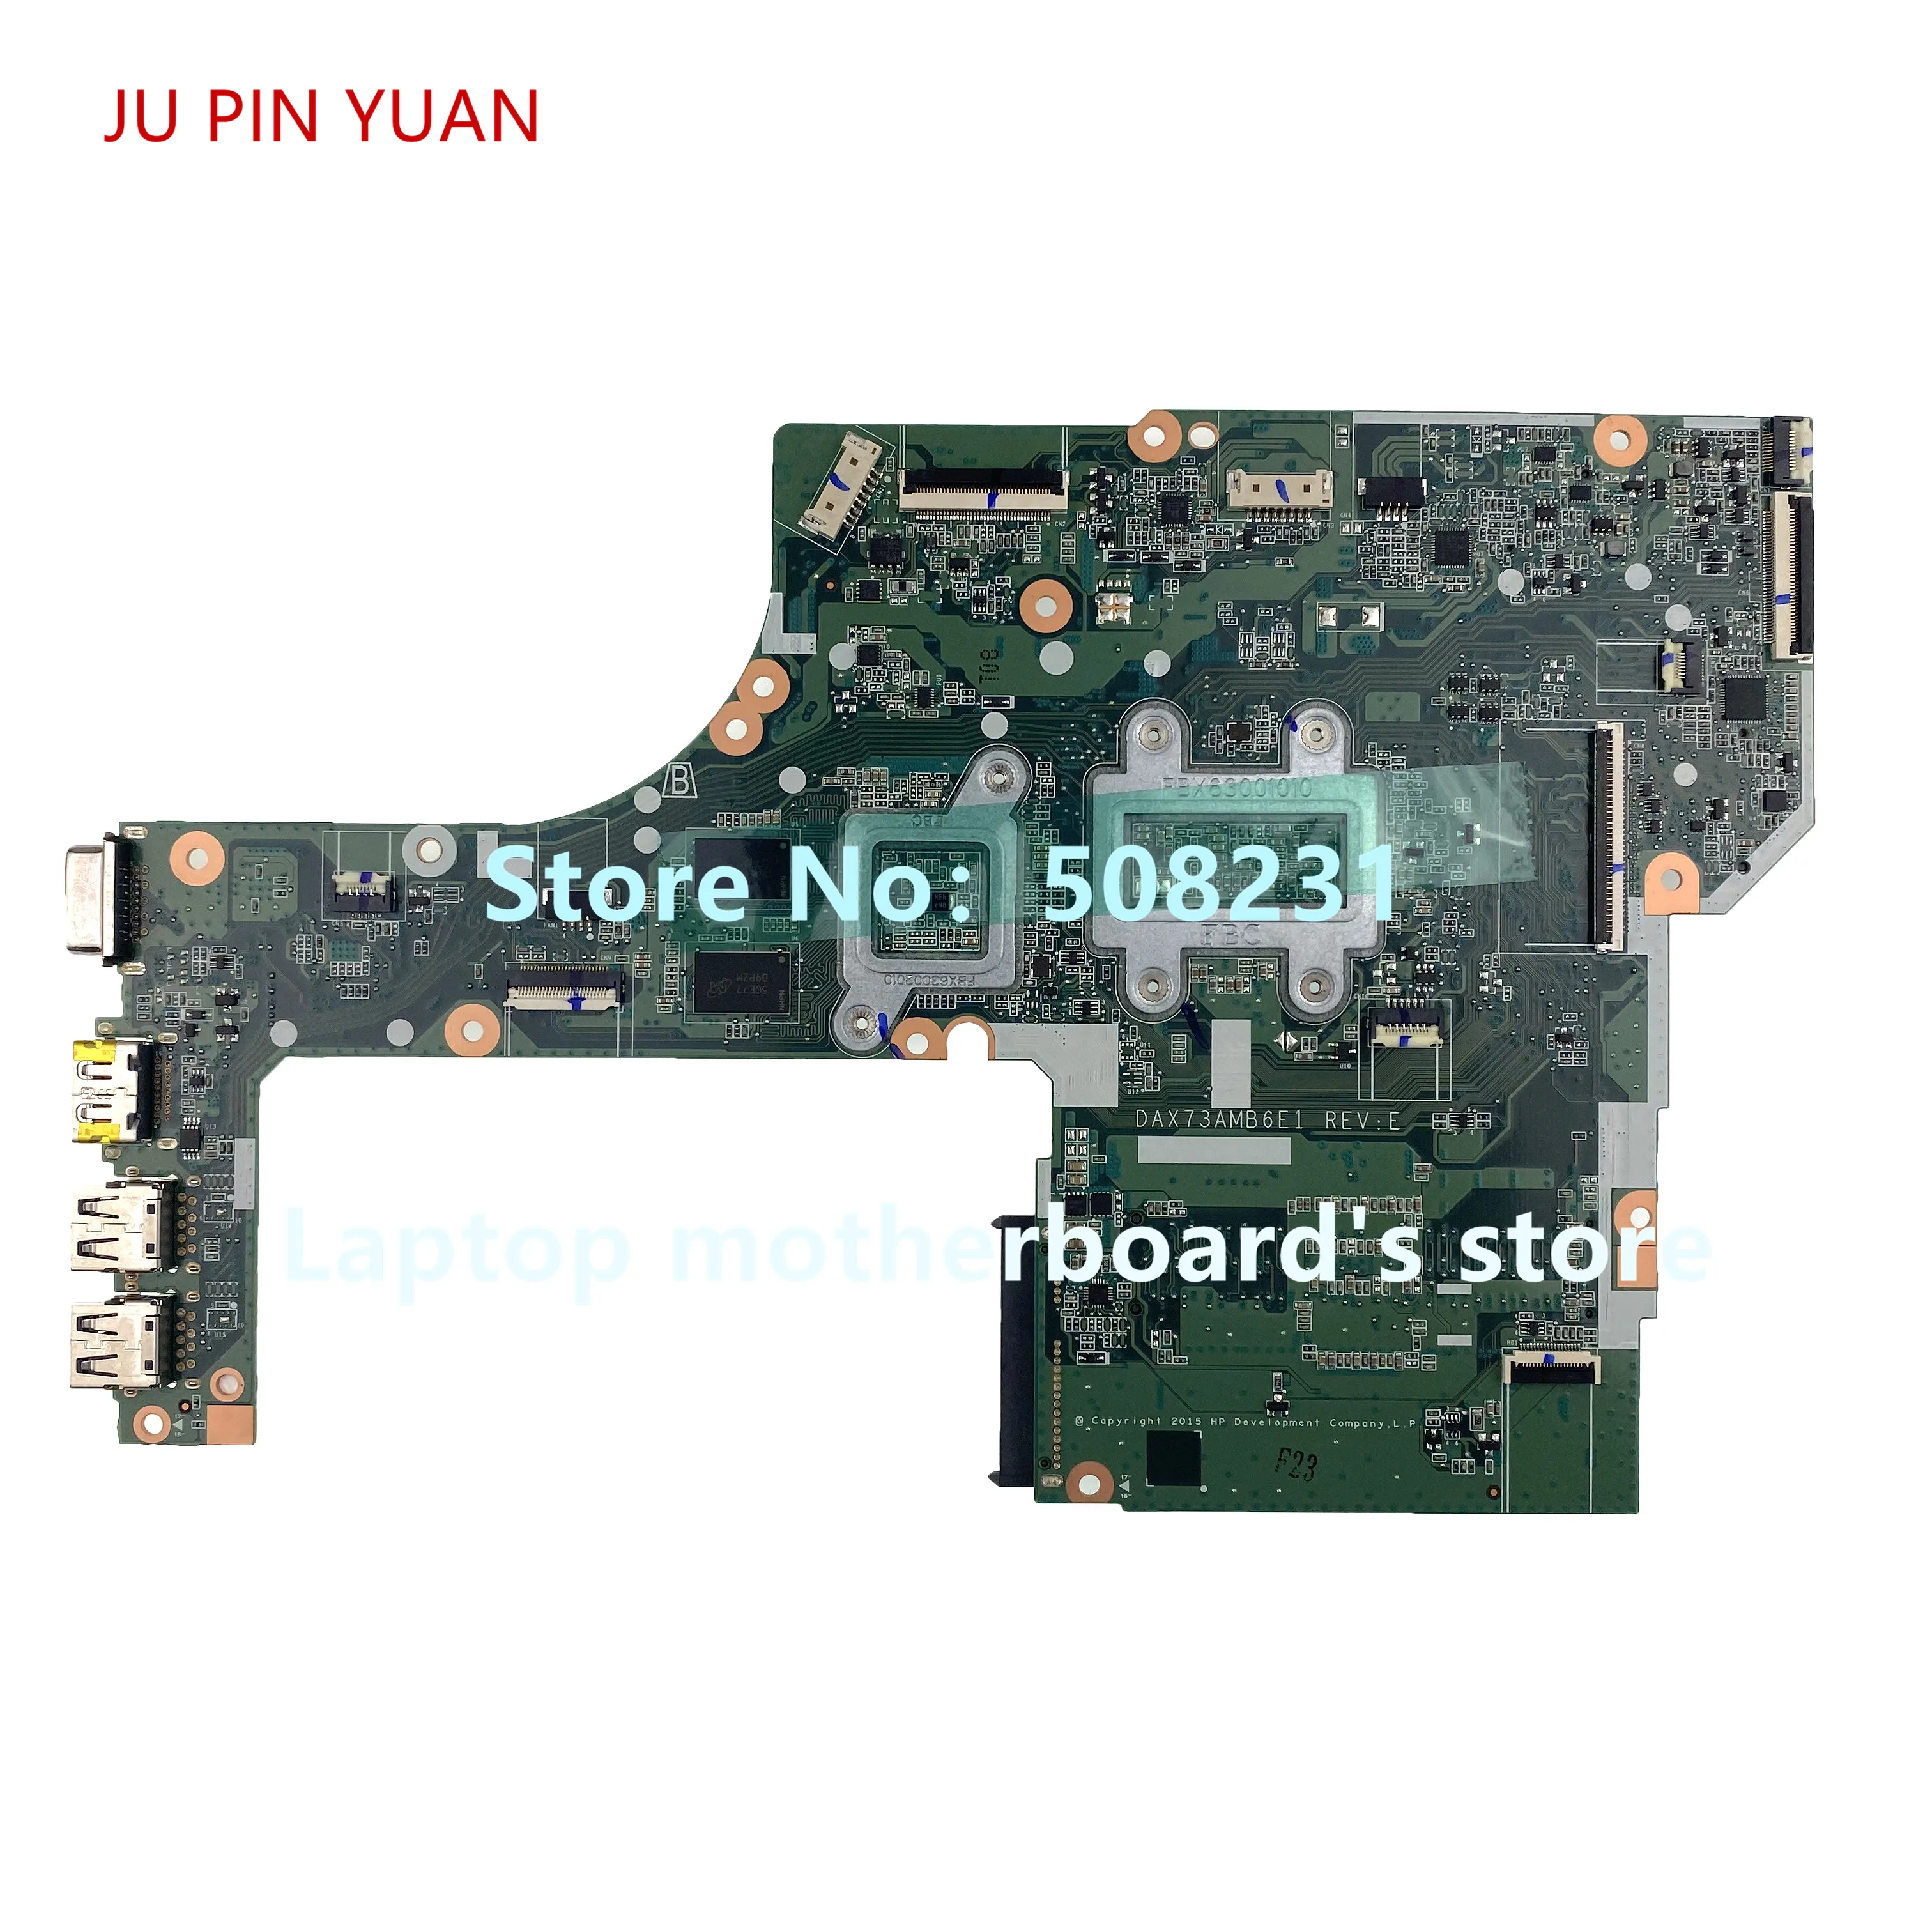 JU PIN YUAN 828433-001 828433-601     DAX73AMB6E1    2    HP ProBook 455 G3